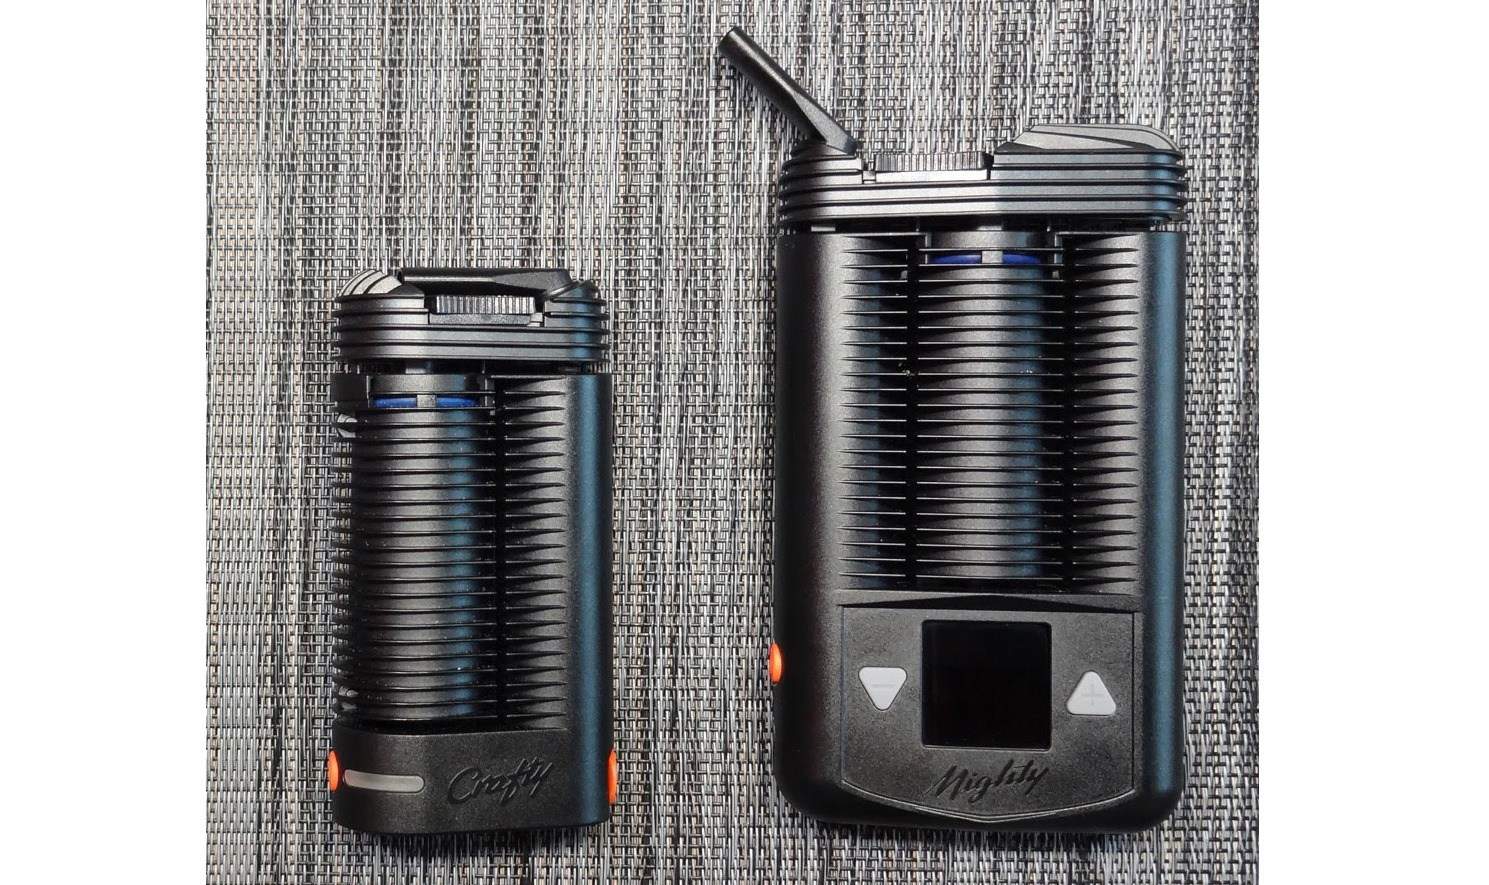 Quelle est la différence entre les vaporisateurs portables Mighty et Crafty ?